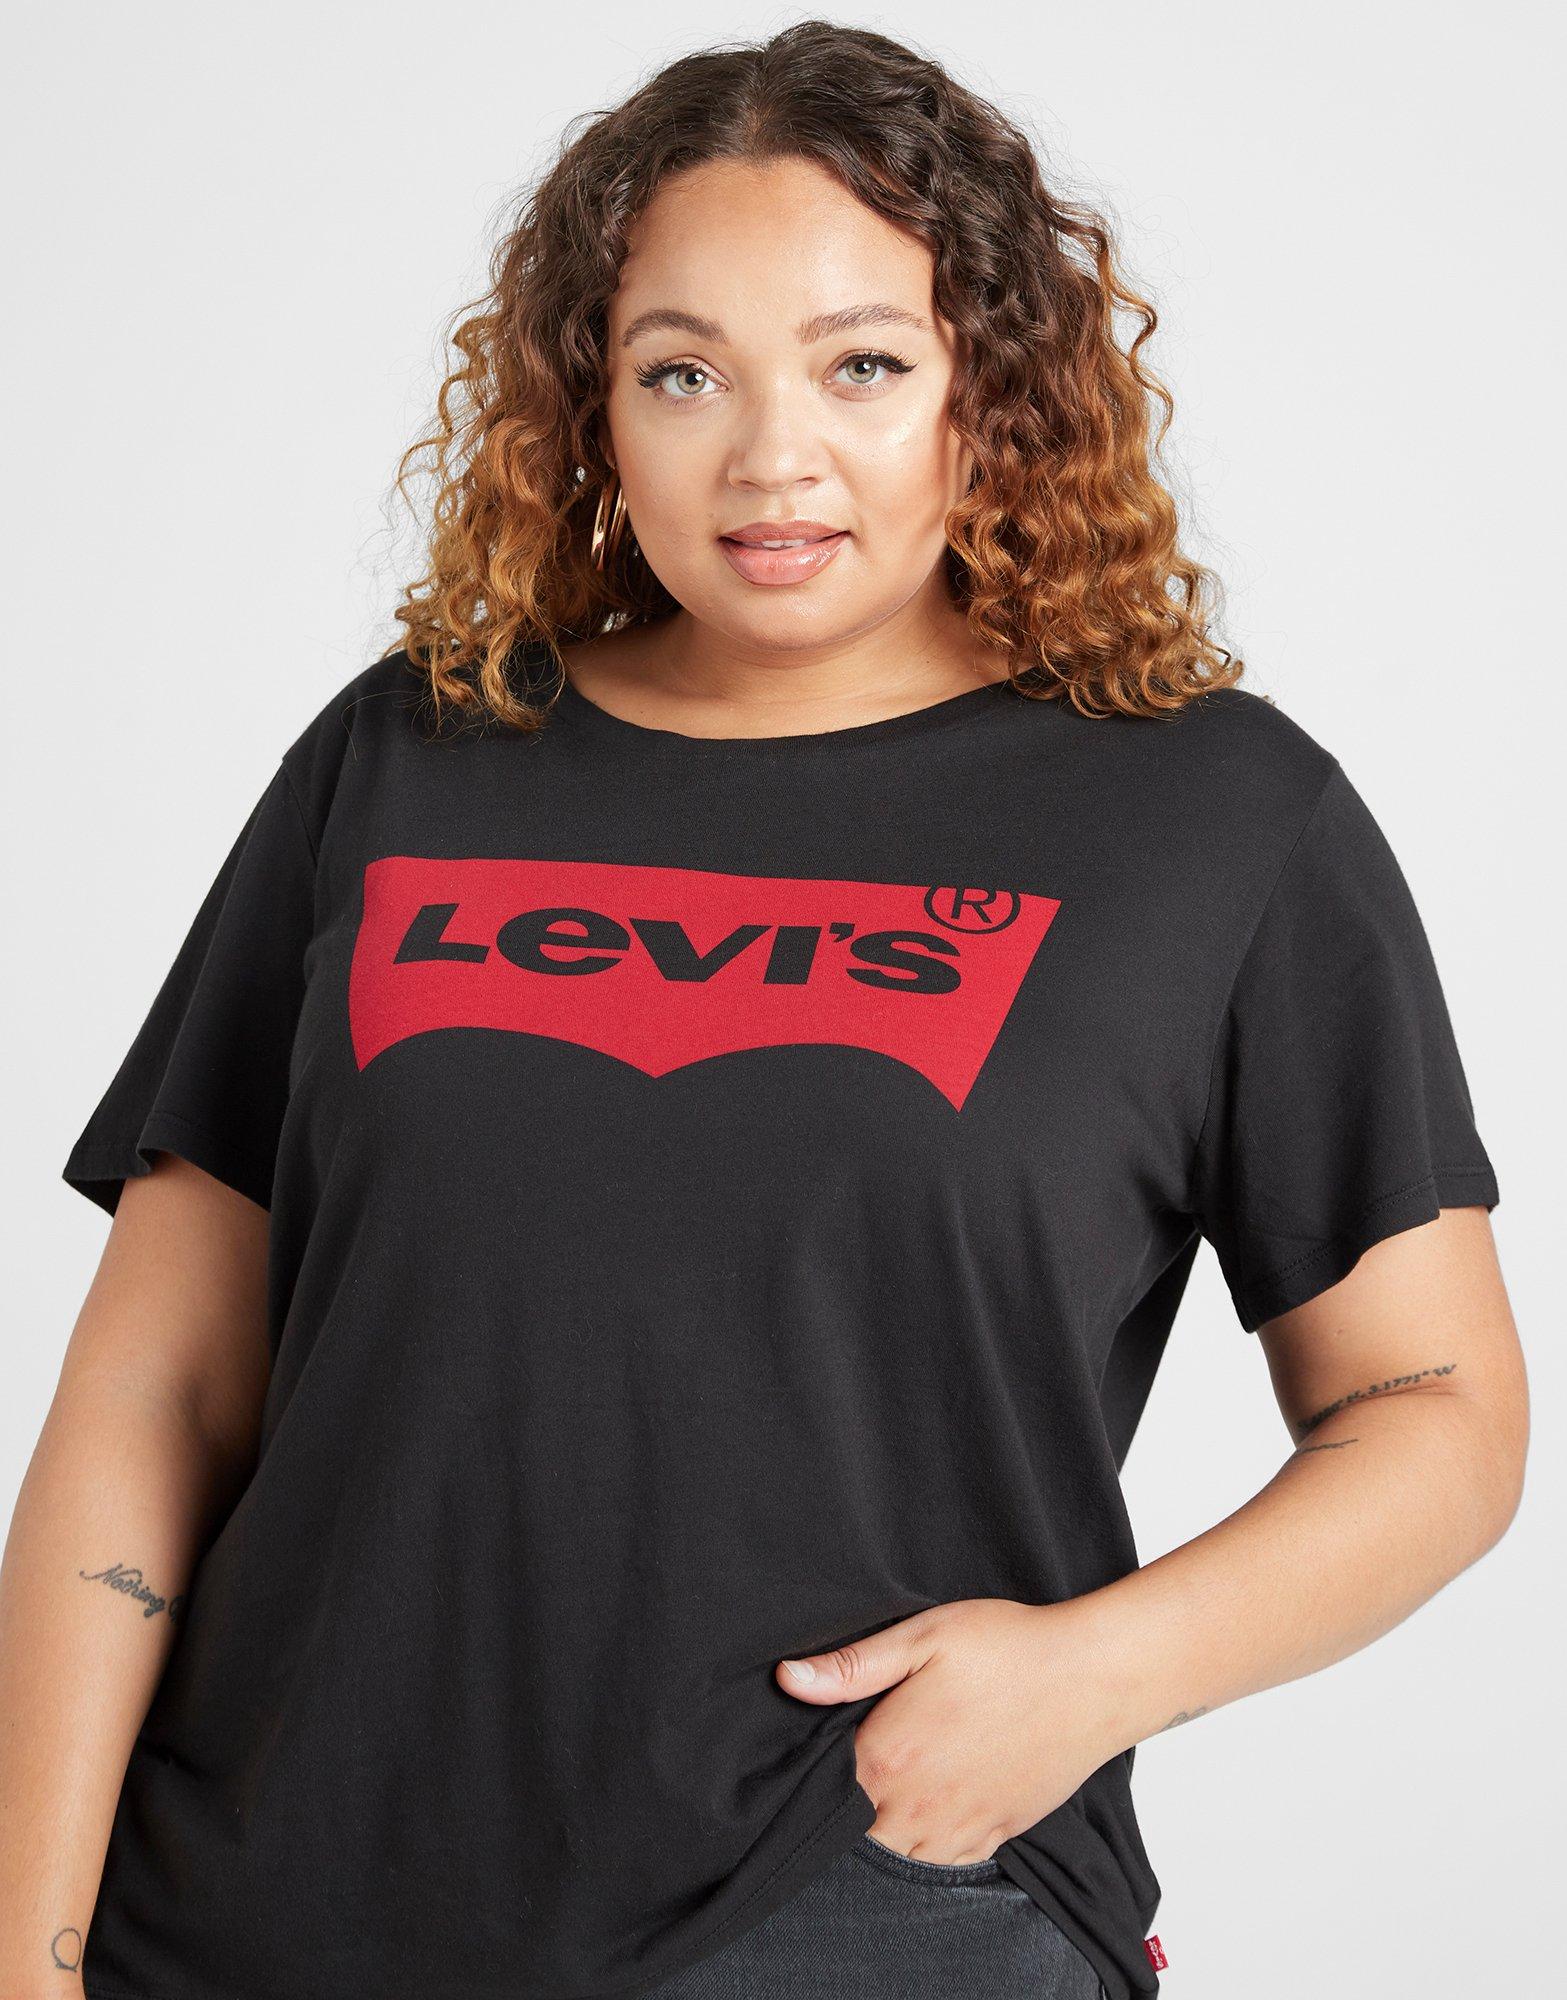 levis shirt size